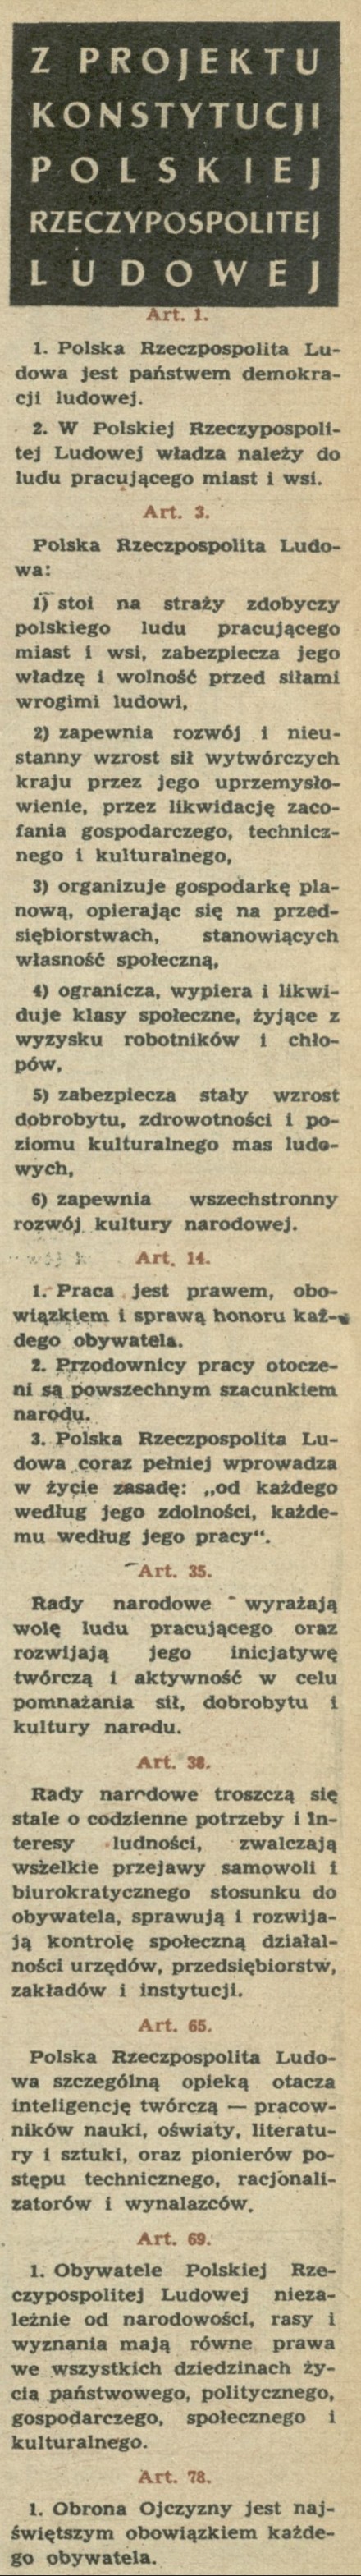 Z projektu Konstytucji Polskiej Rzeczpospolitej Ludowejej